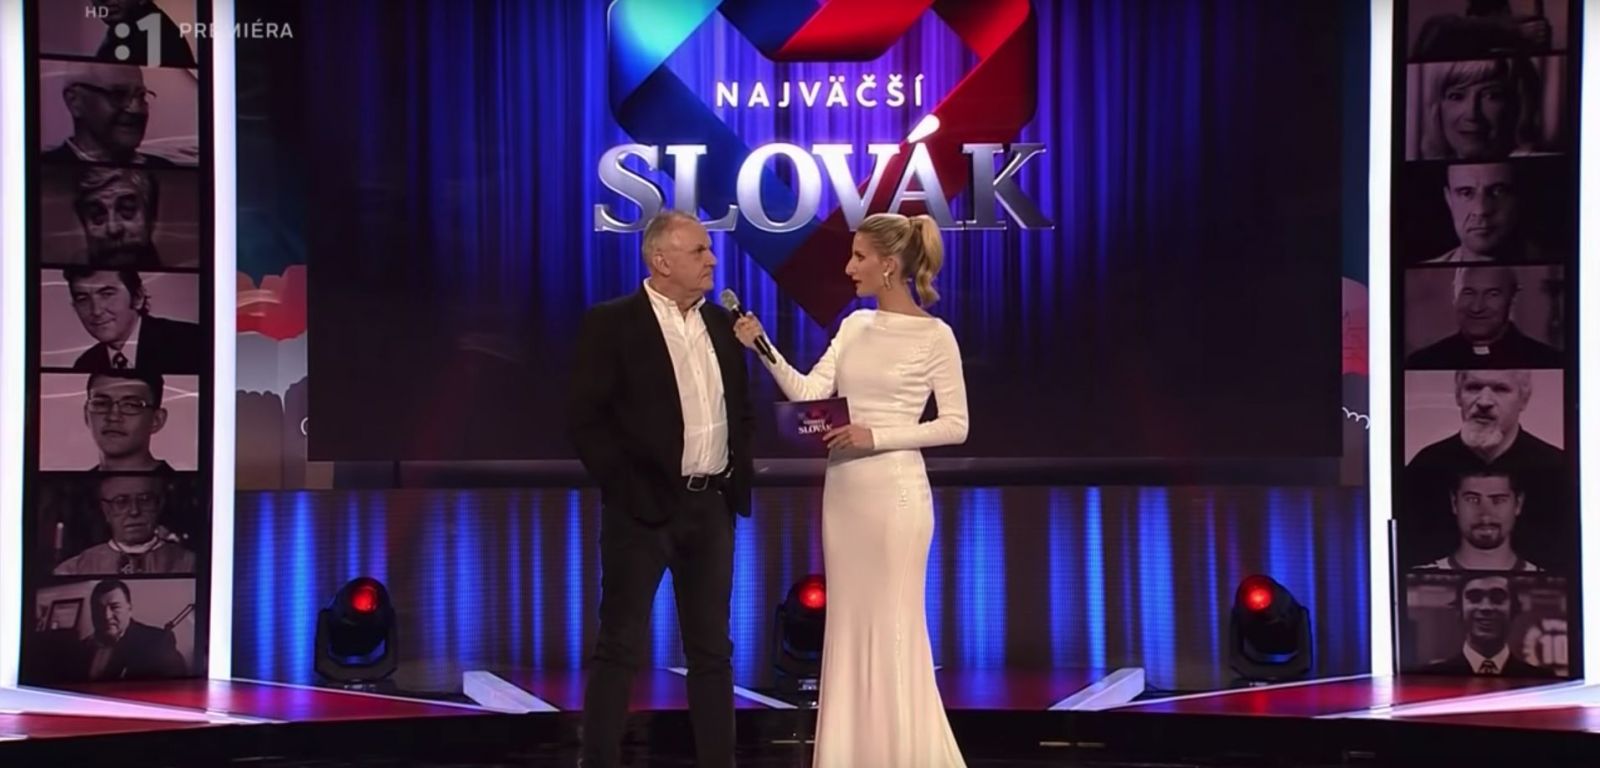 Najväčší Slovák: Šou za 700 tisíc je hanbou pre celú krajinu